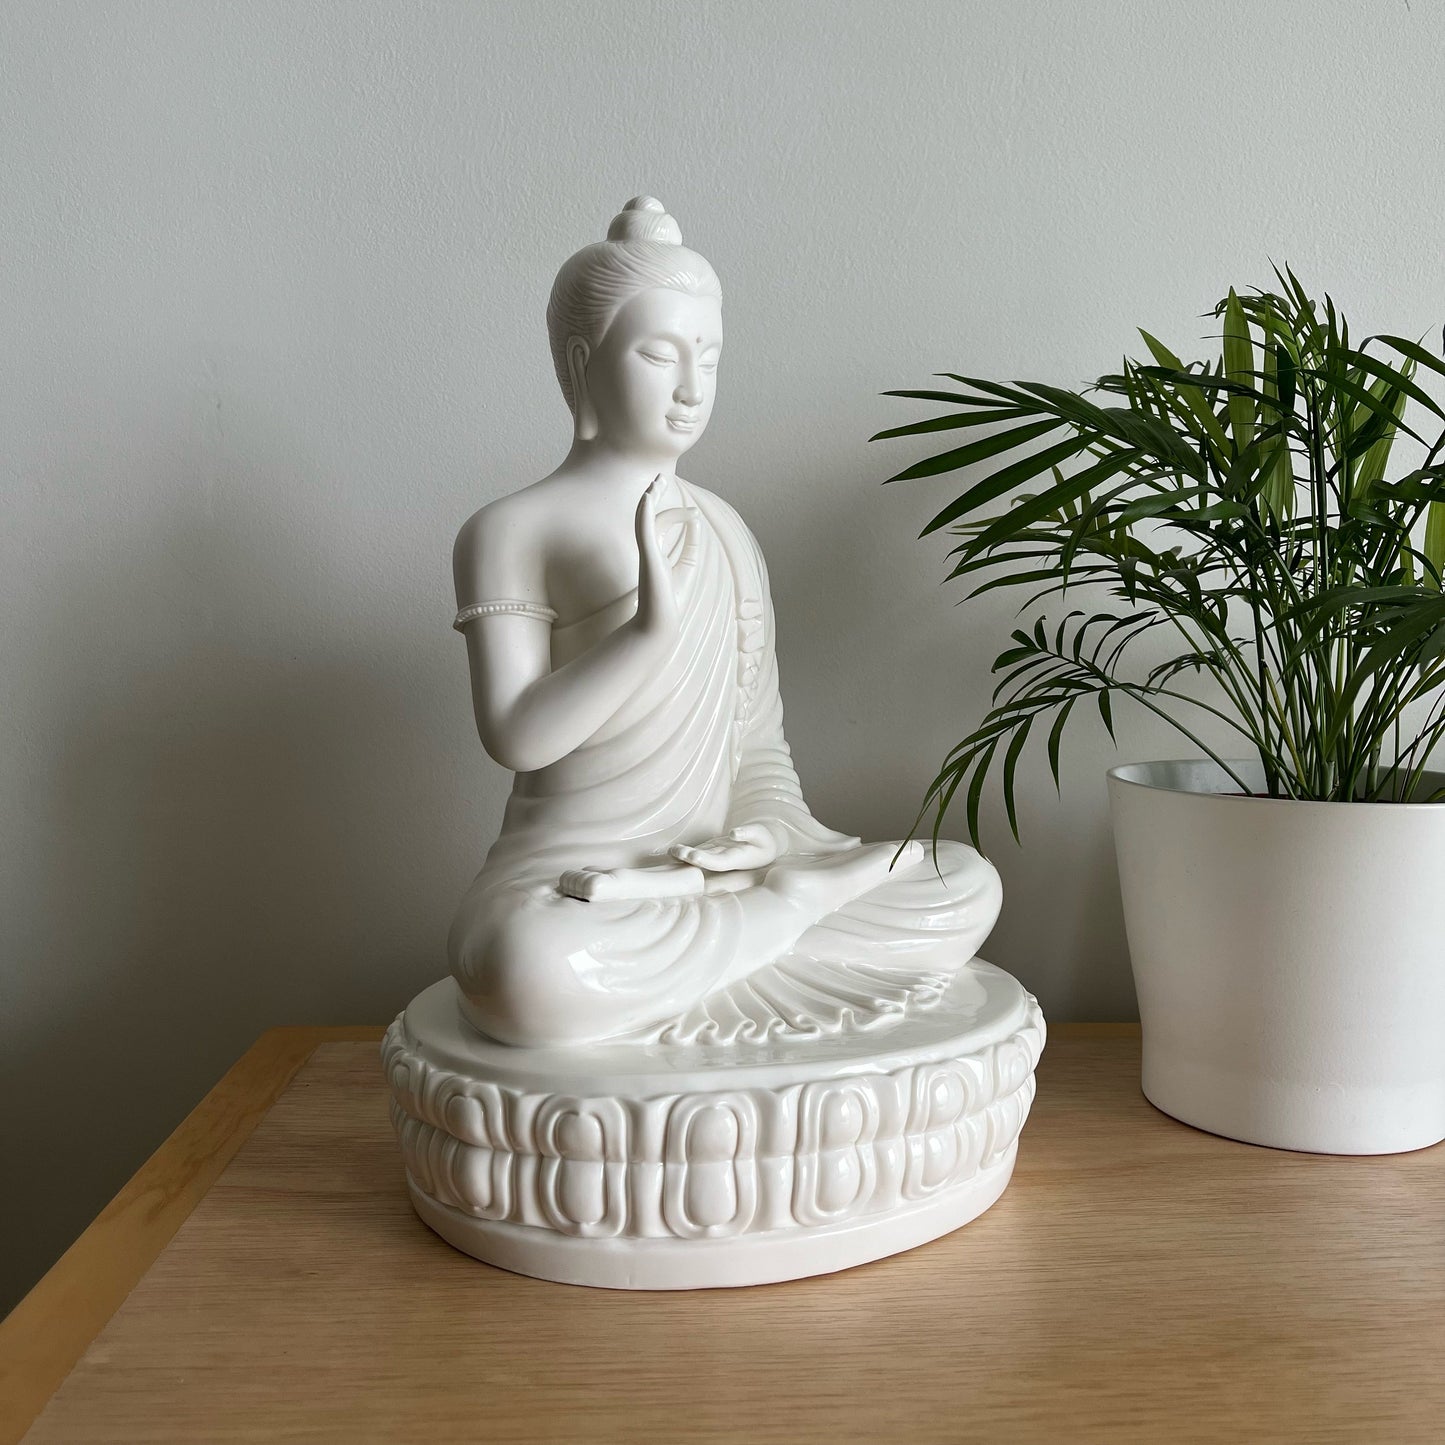 Porcelain Shakyamuni Vitarka Mudra Buddha Statue | Gautama Buddha | Meditation | Oriental Decoration | Gift for him or her